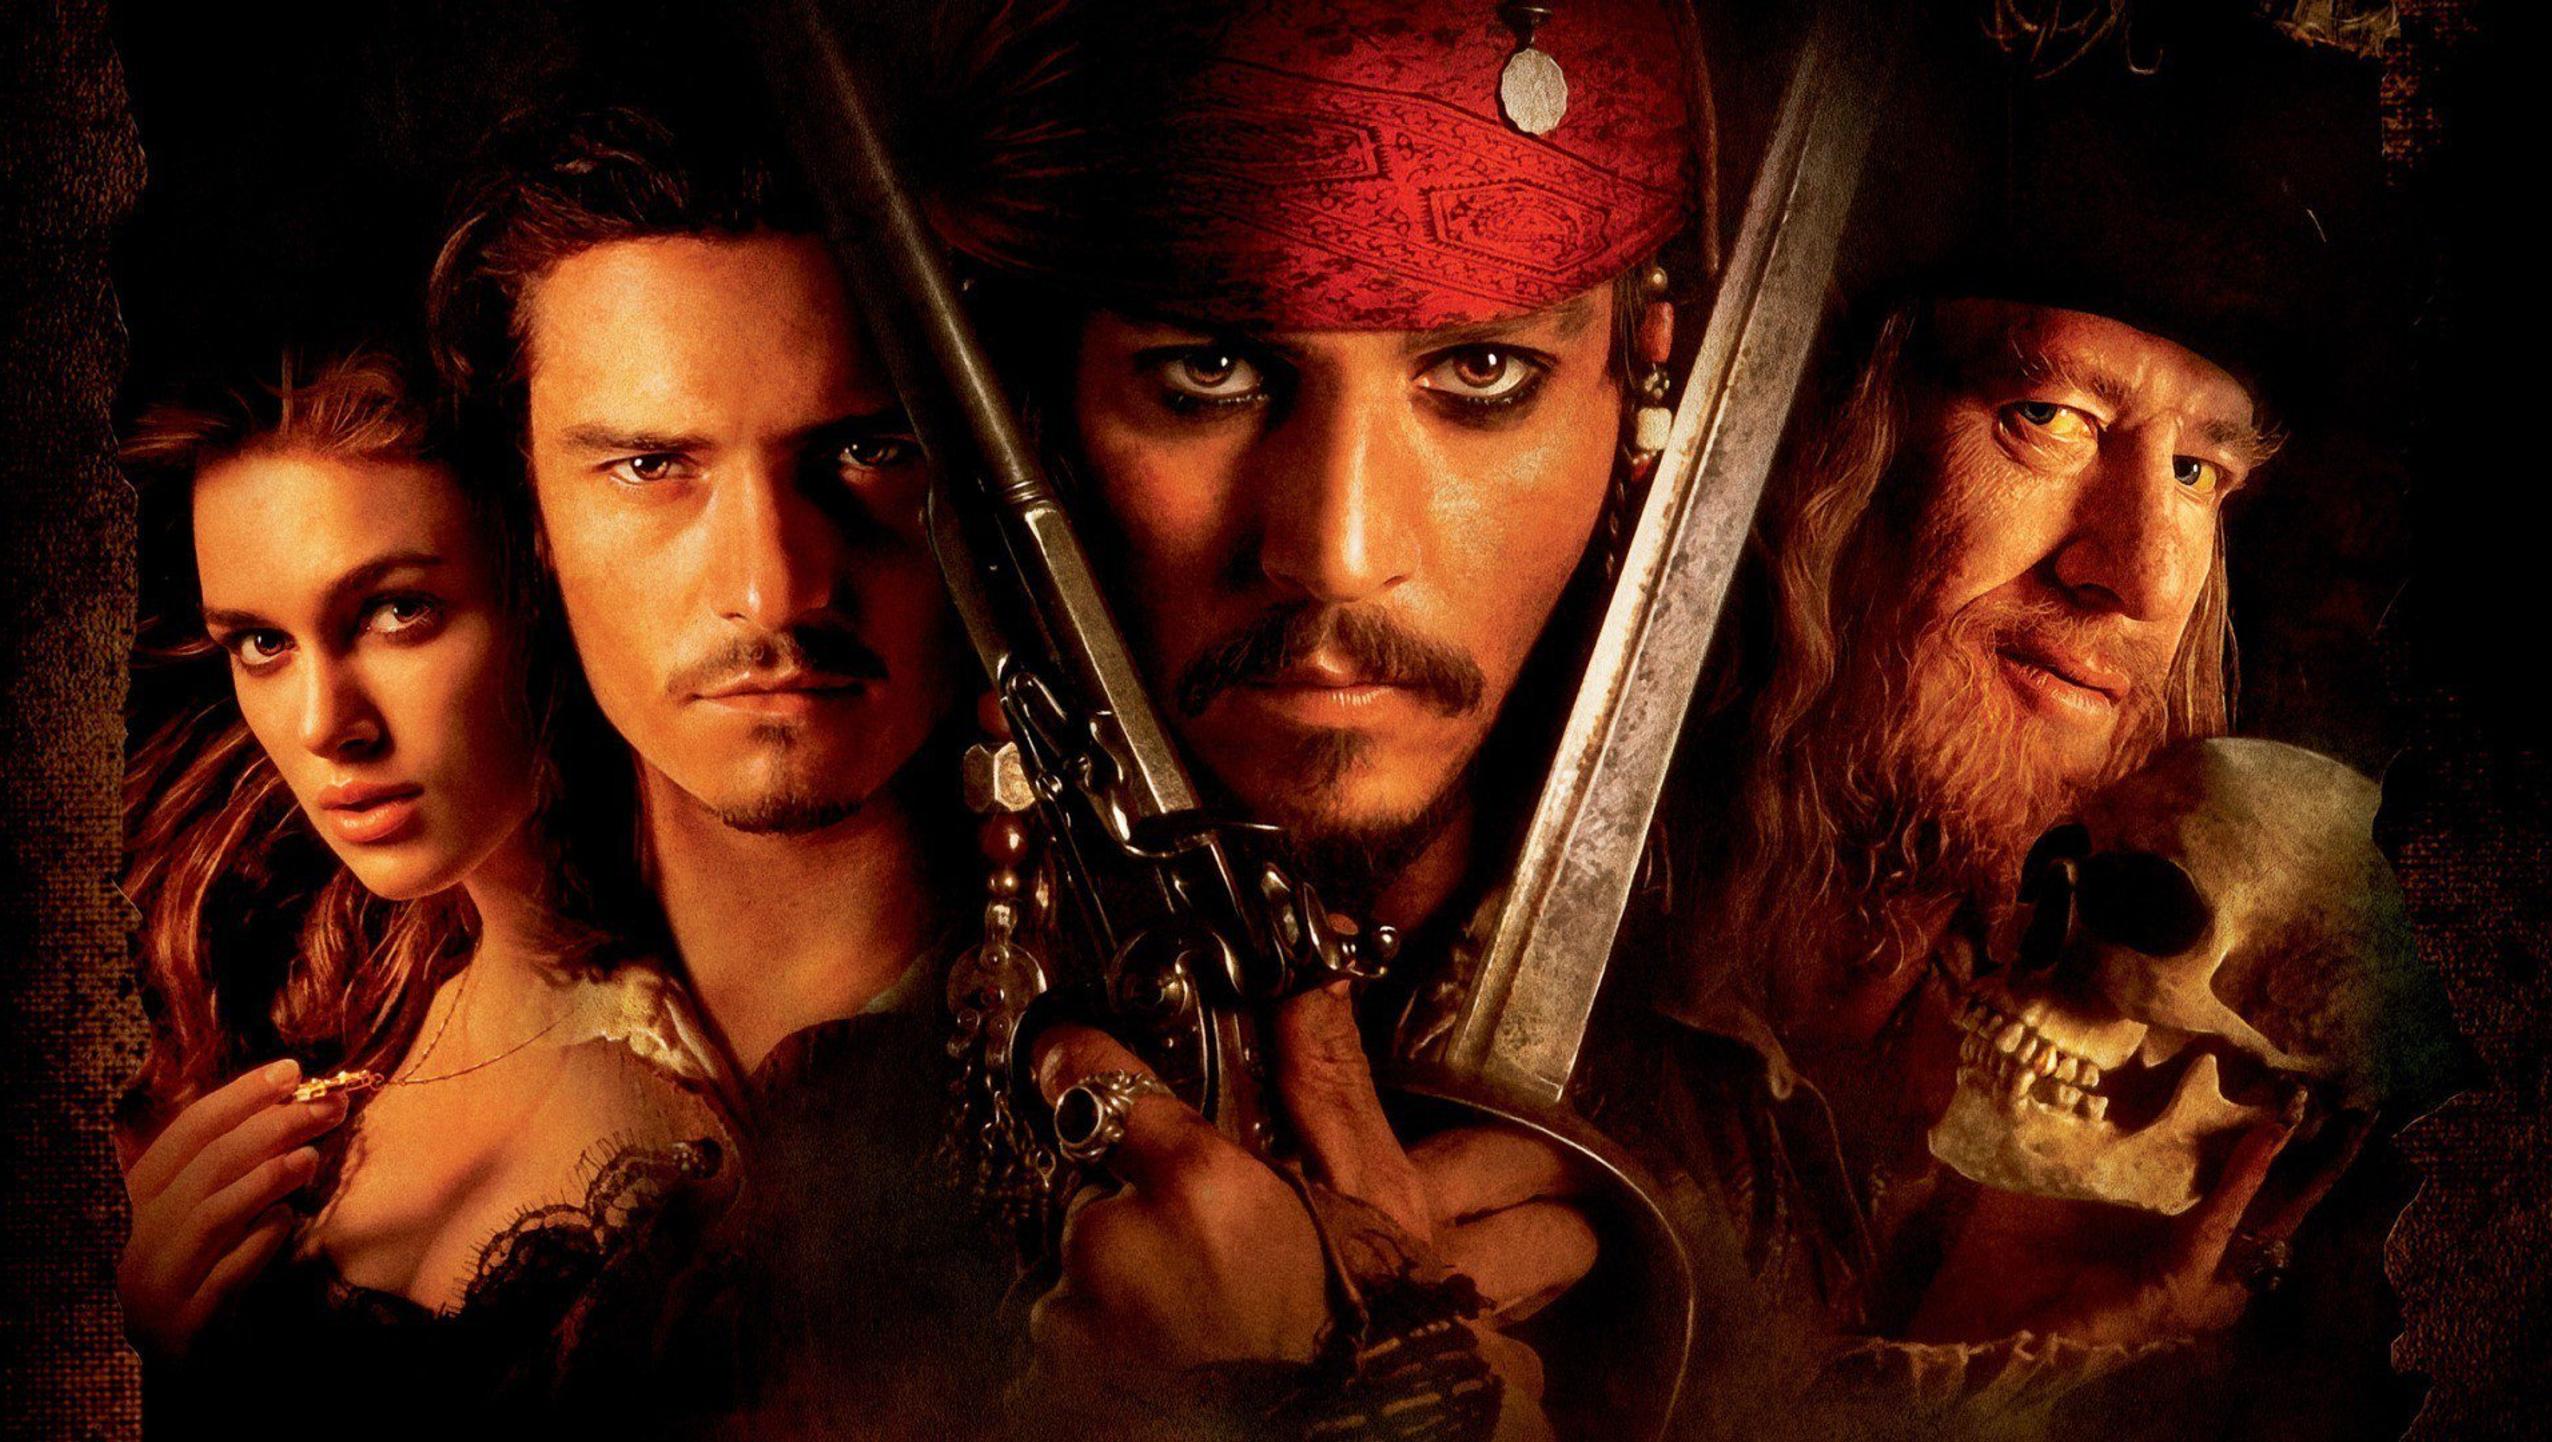 Melhores Filmes de Ação - Piratas do Caribe - A Maldição do Pérola Negra